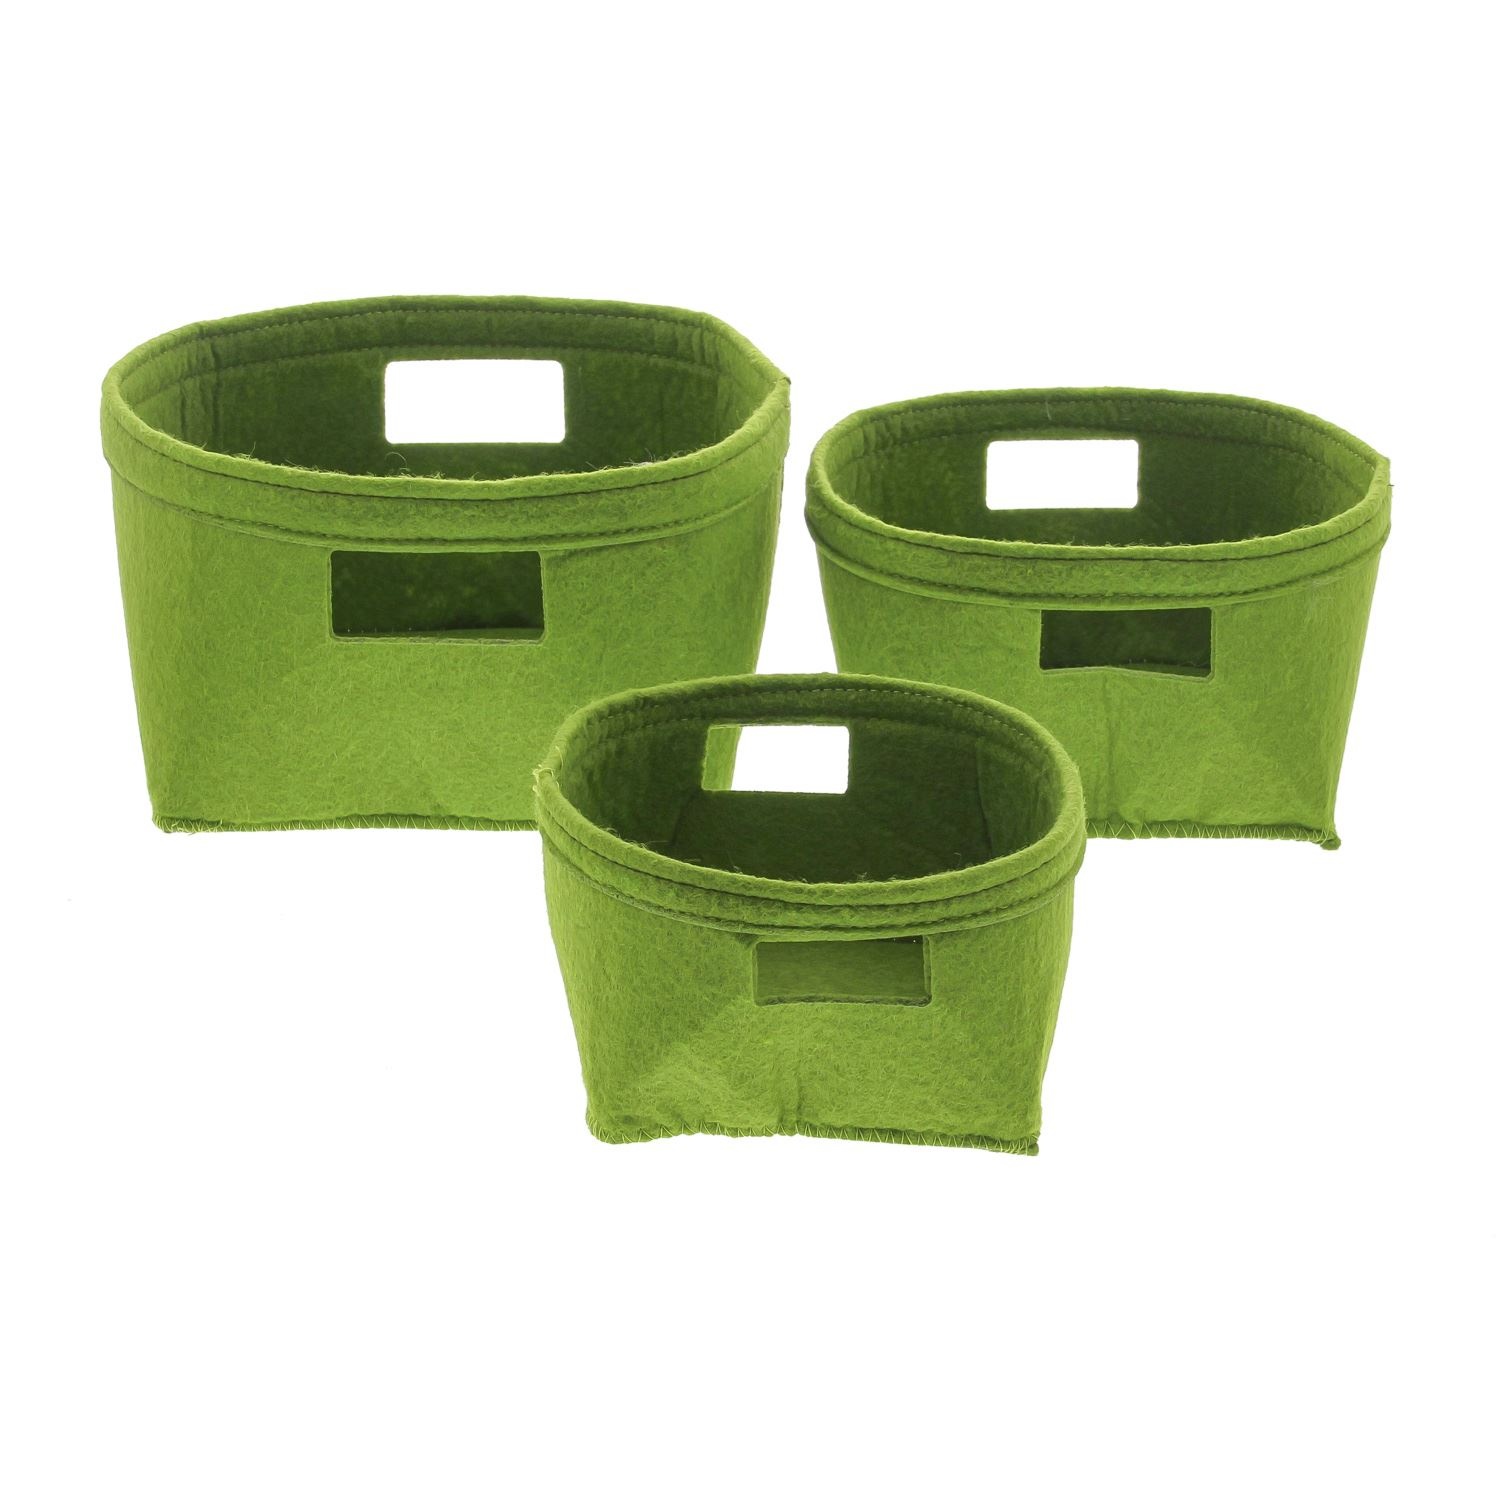 Felt baskets green - 220*120*220mm - 4 x set of 3 pieces